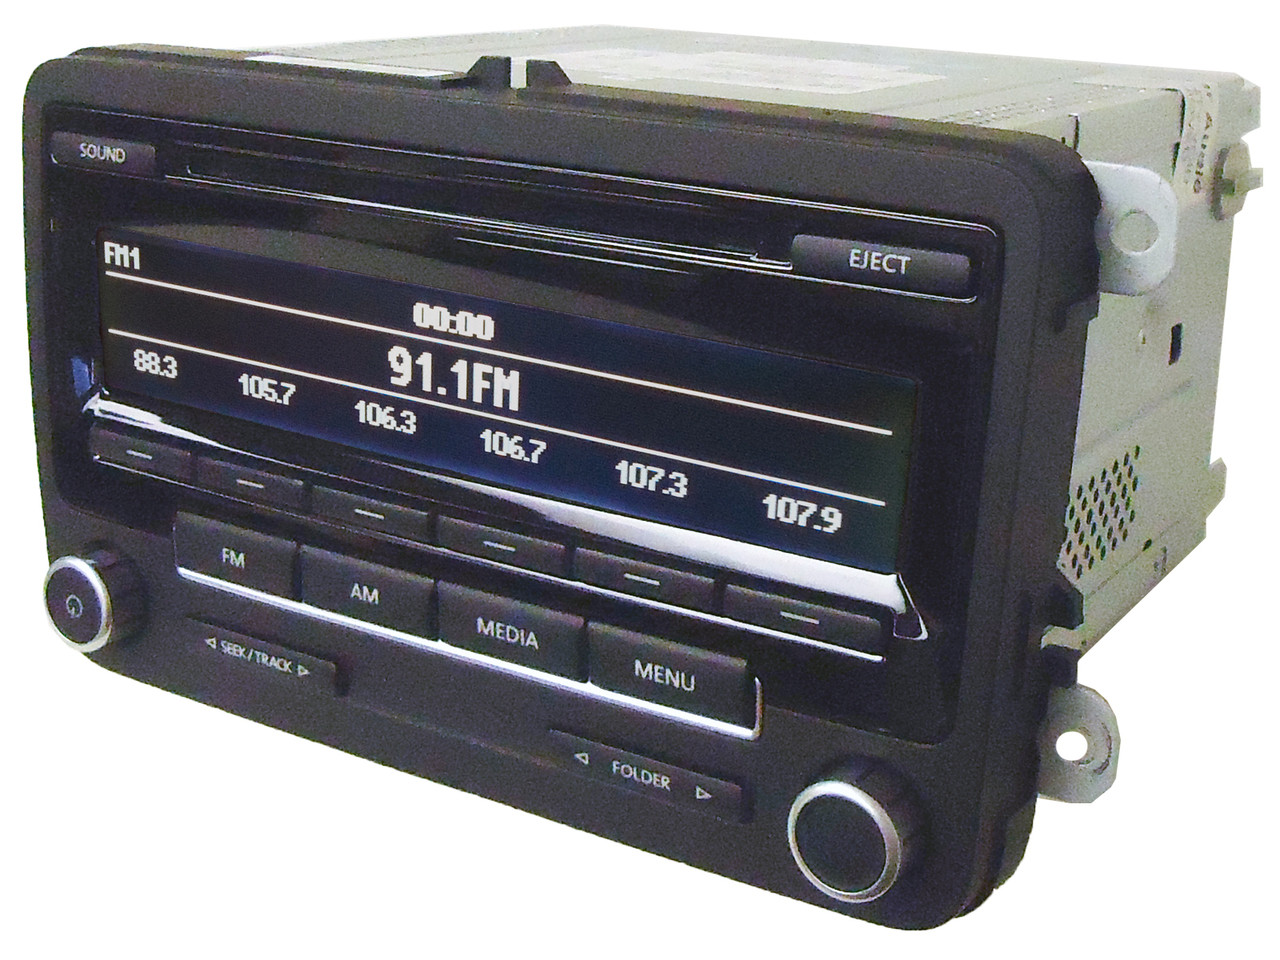 VW RCD 310 CD MP3 Lecteur, VW EOS Voiture Stéréo Autoradio, Fourni Avec  Radio